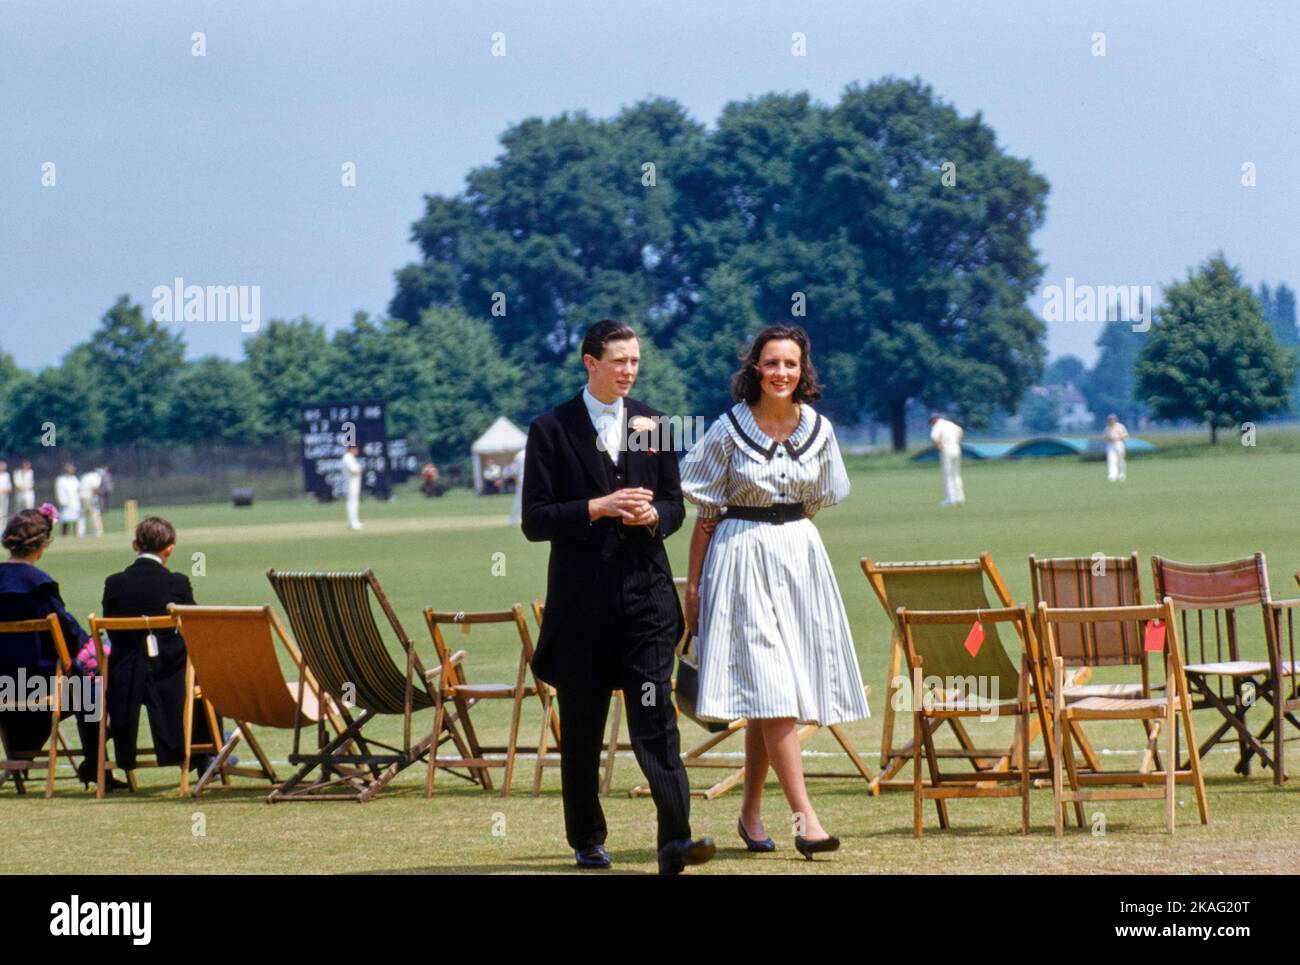 Adolescente y adolescente asistiendo a un partido de críquet, evento del 'Cuatro de Junio', Eton College, Eton, Berkshire, Inglaterra, UK, Toni Frissell Collection, 4 de junio de 1959 Foto de stock